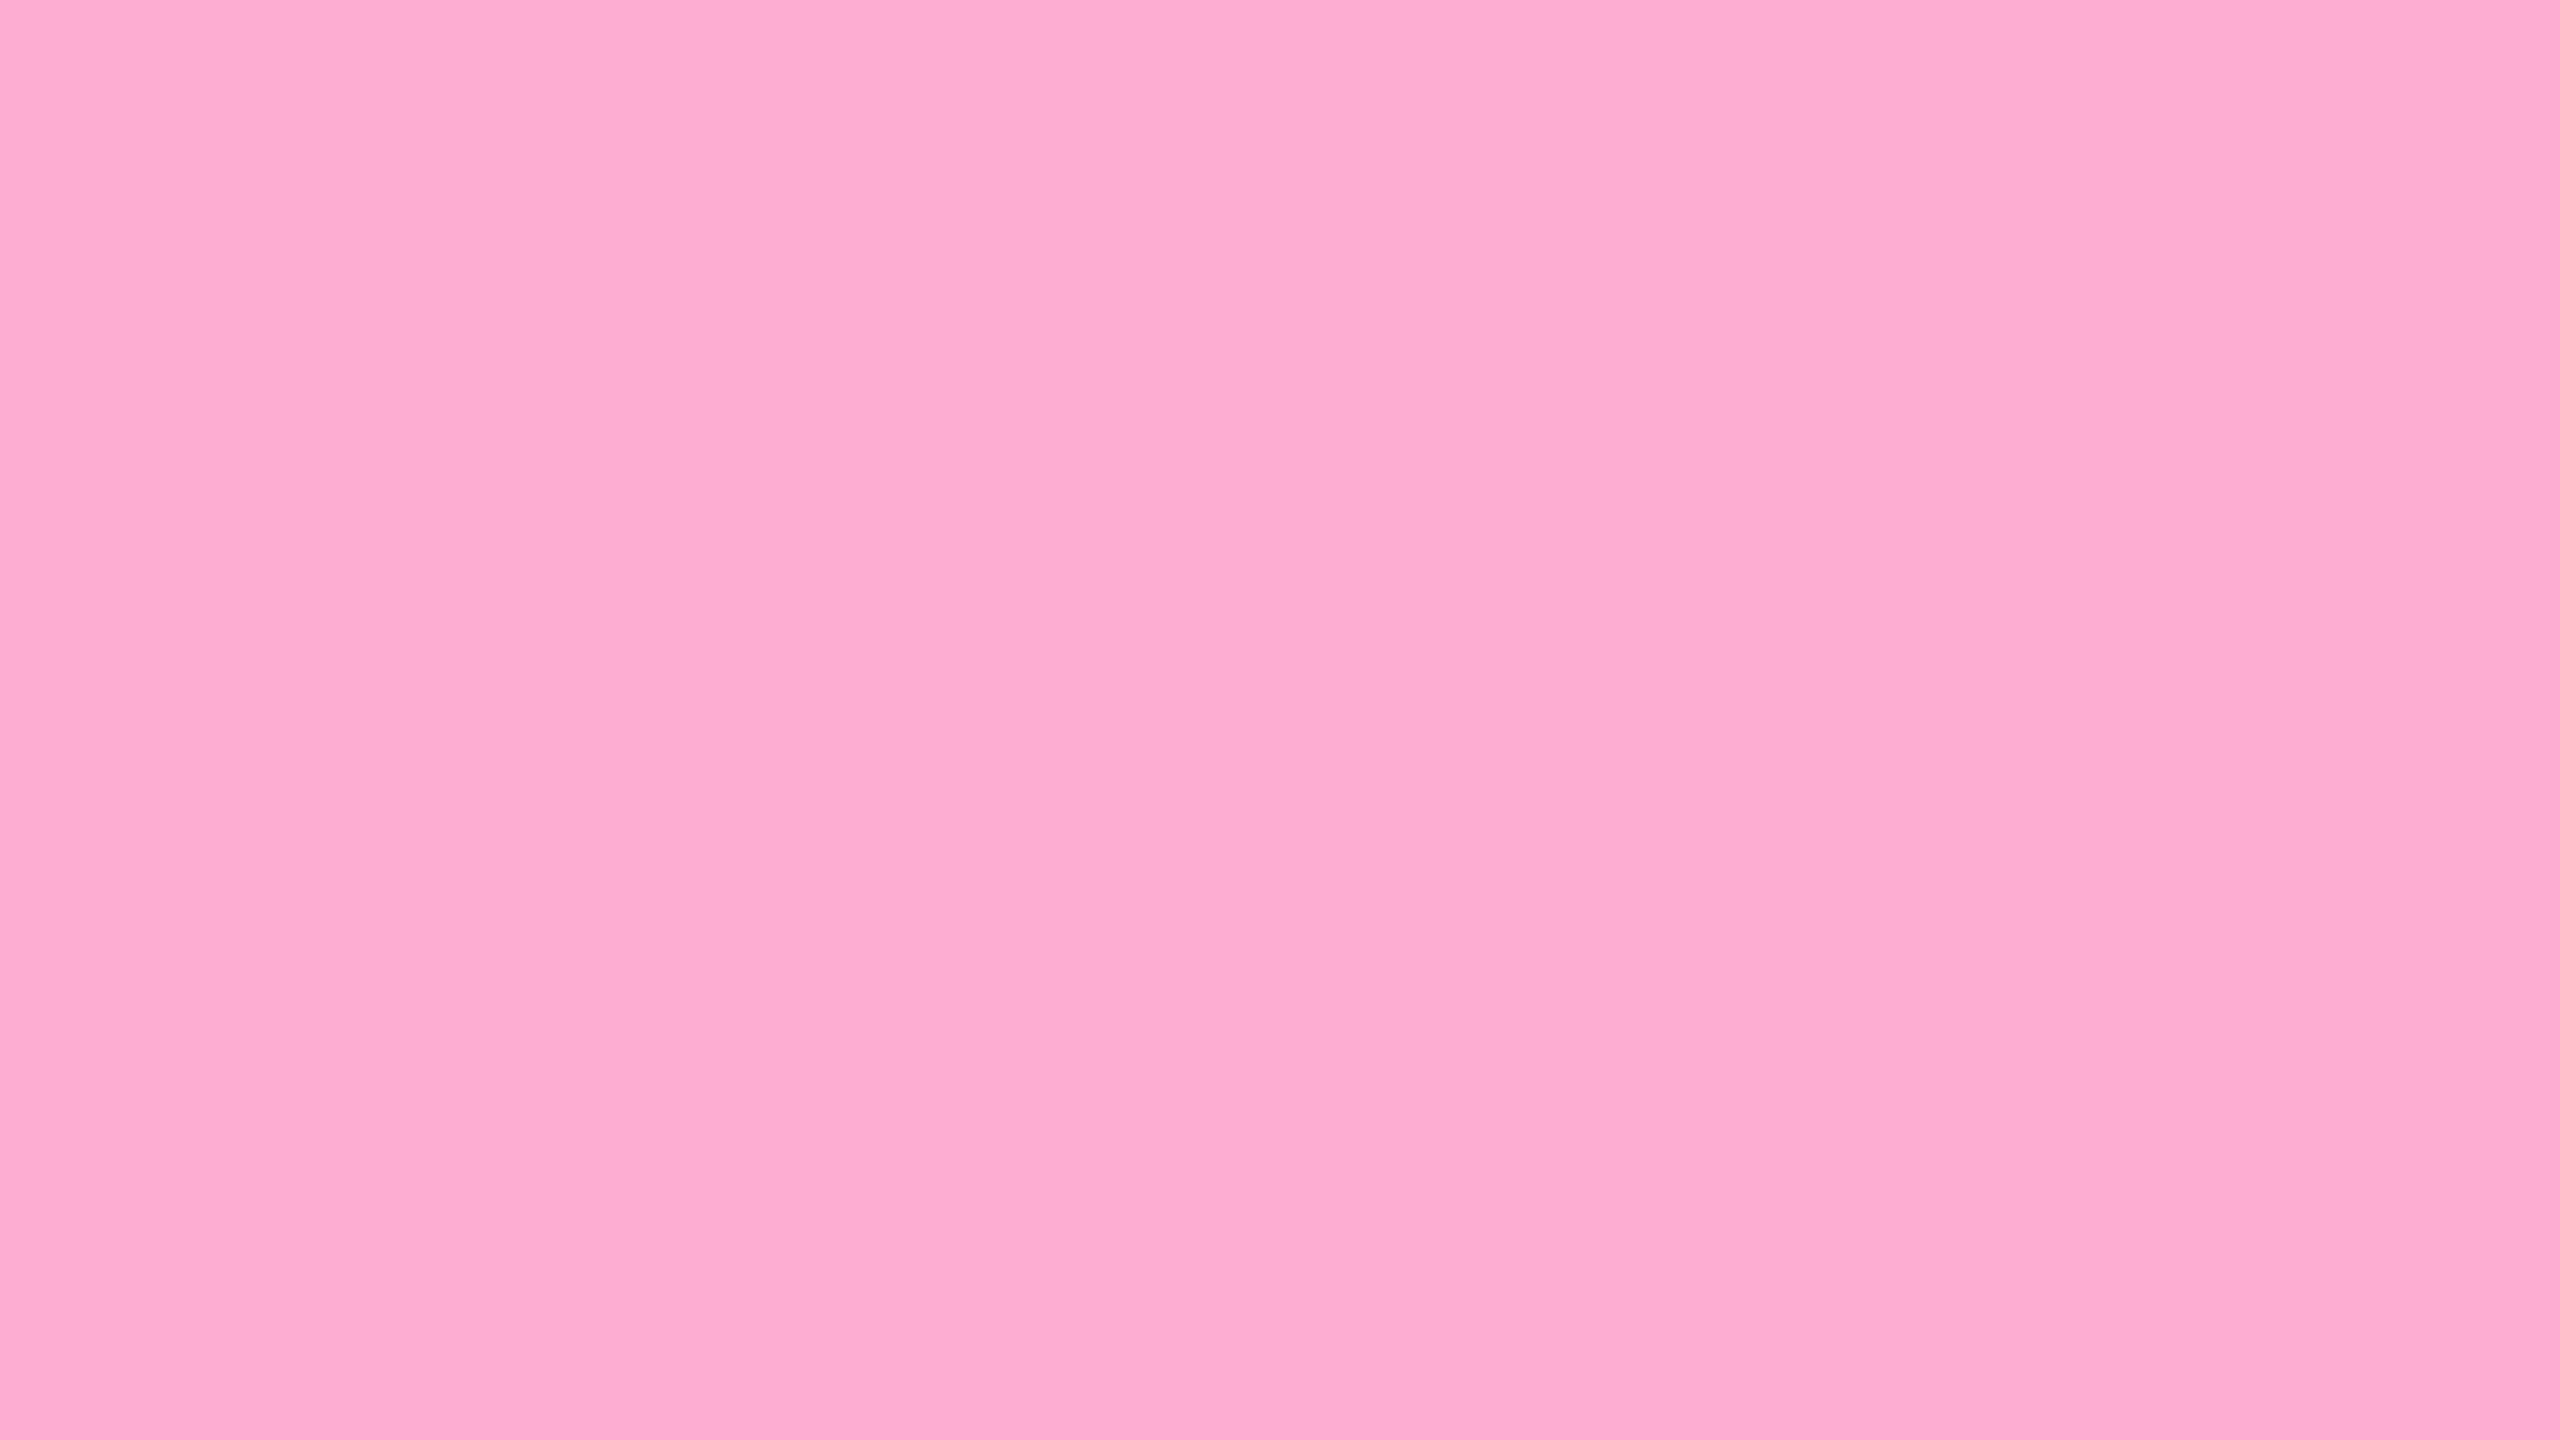 Hình nền tím hồng là một trong những thứ bạn không thể thiếu để trang trí cho thiết bị đang sử dụng. Không chỉ đơn giản là một bức ảnh đẹp, màu sắc tím hồng sẽ mang lại cho bạn cảm giác yên bình và giúp tăng thêm tính thẩm mỹ cho sản phẩm của bạn.